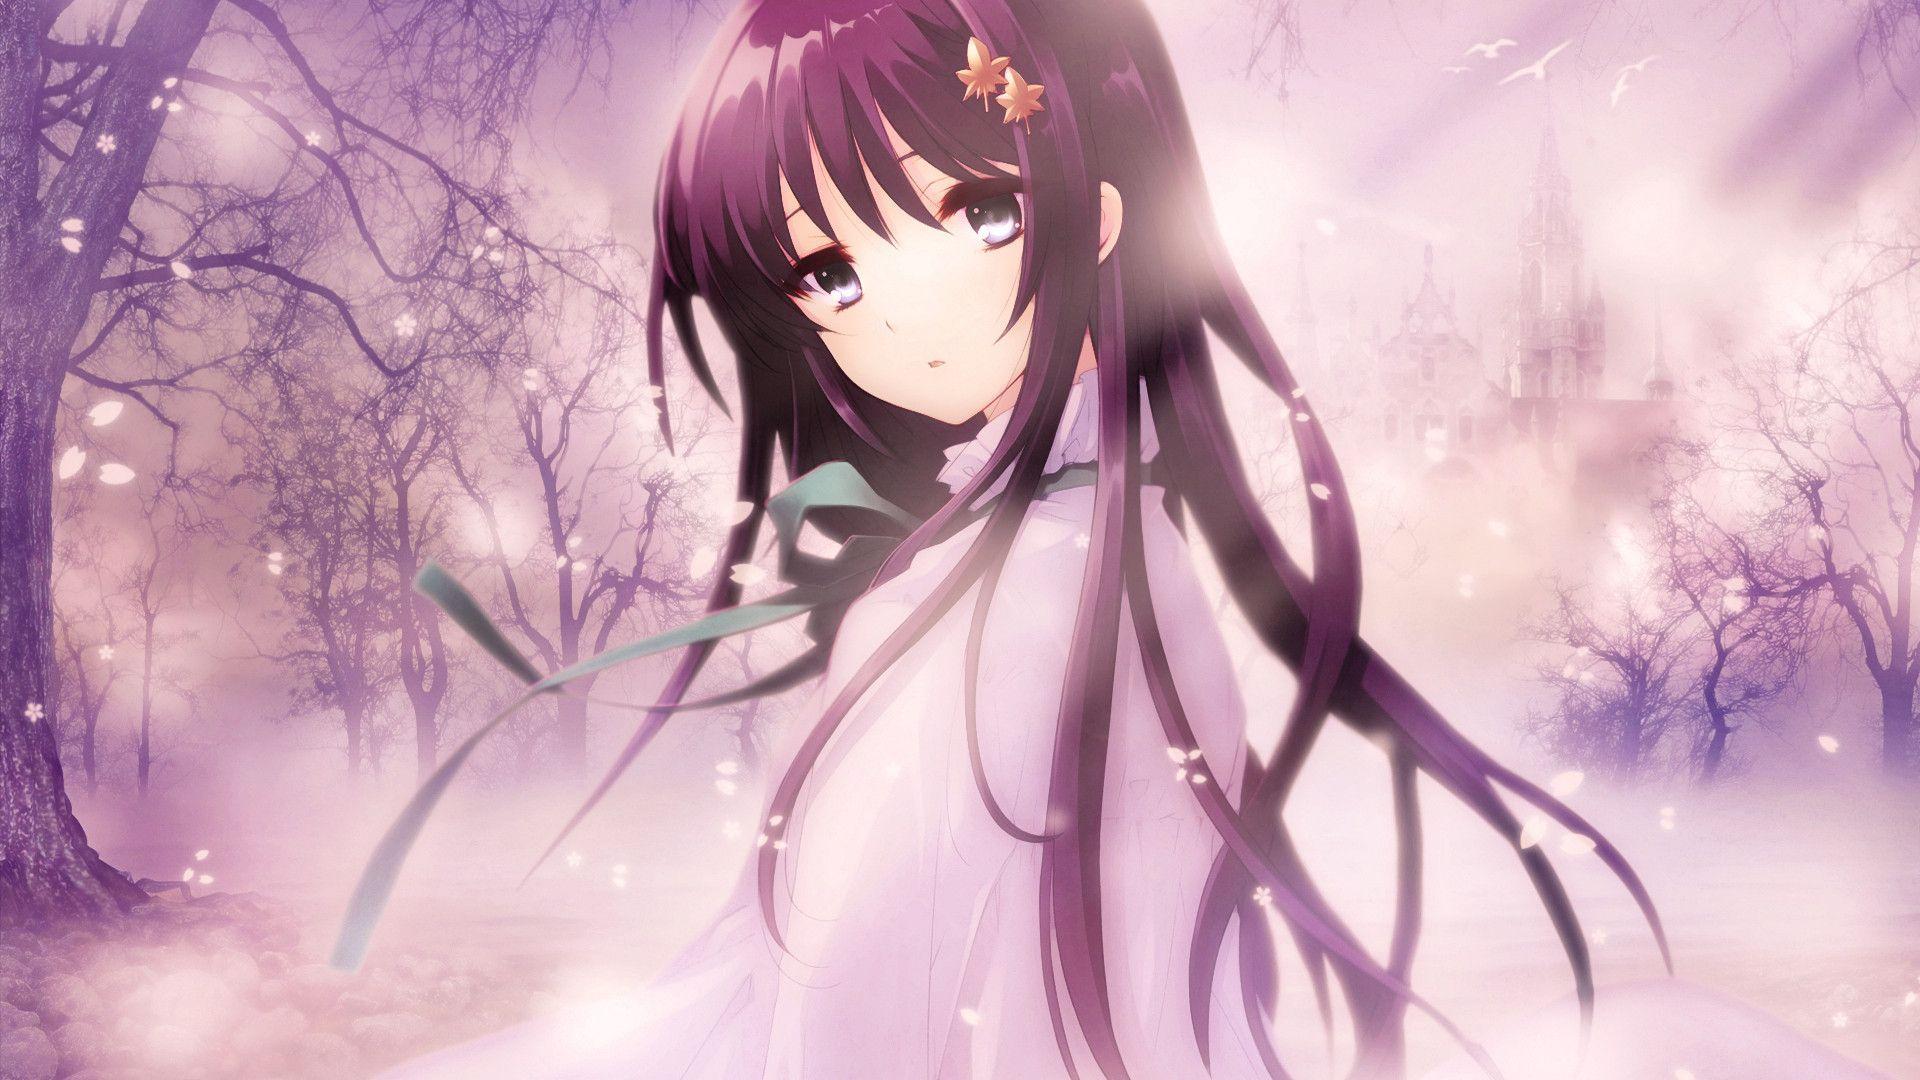 Unduh 57 Background Cantik Anime HD Paling Keren